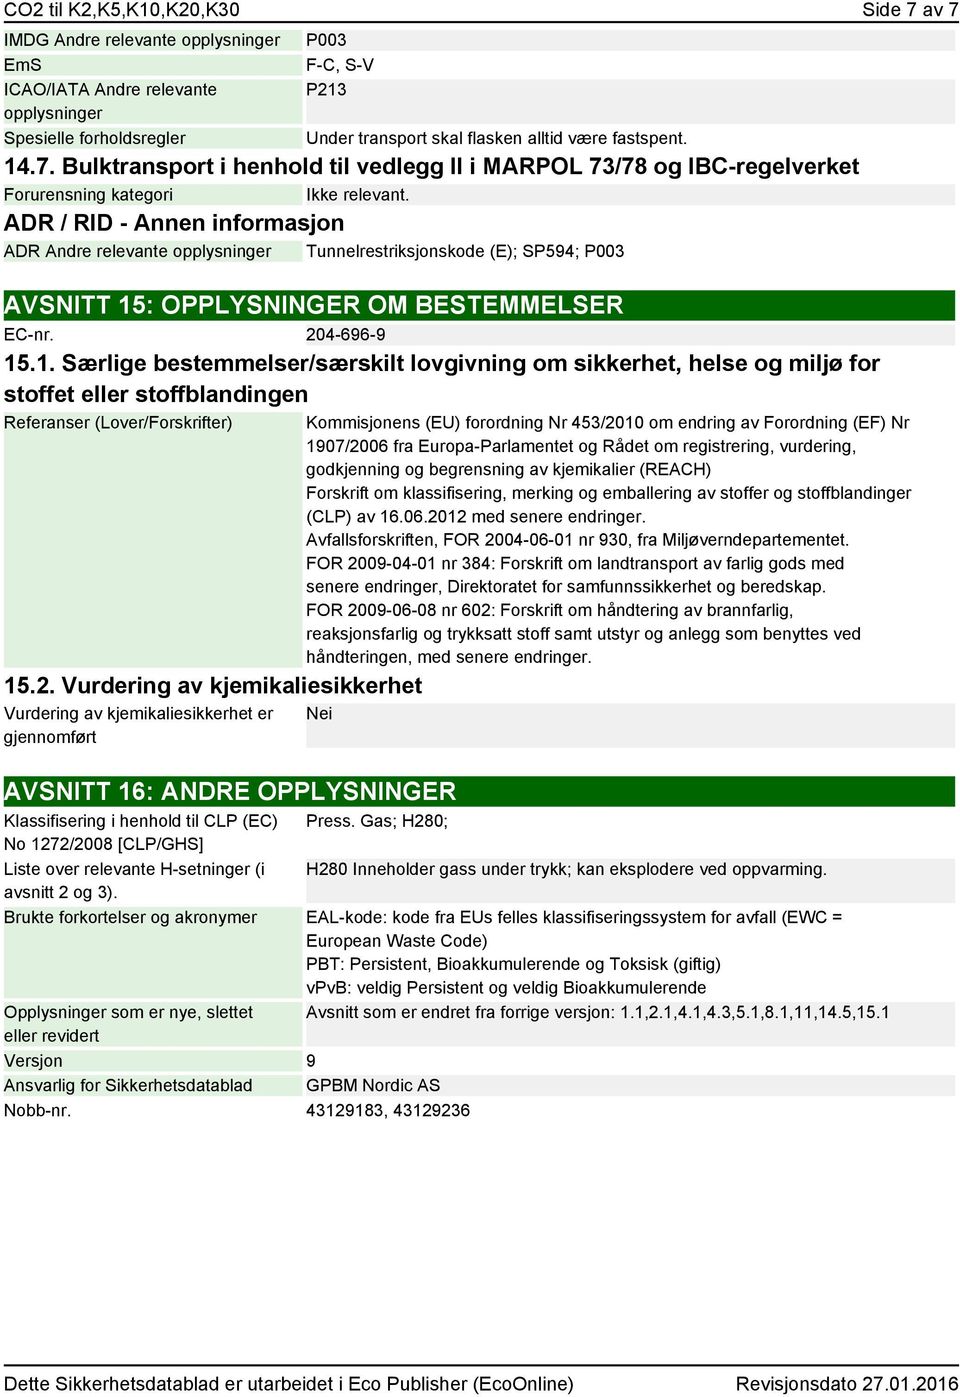 ADR / RID - ADR Andre relevante opplysninger Tunnelrestriksjonskode (E); SP594; P003 AVSNITT 15